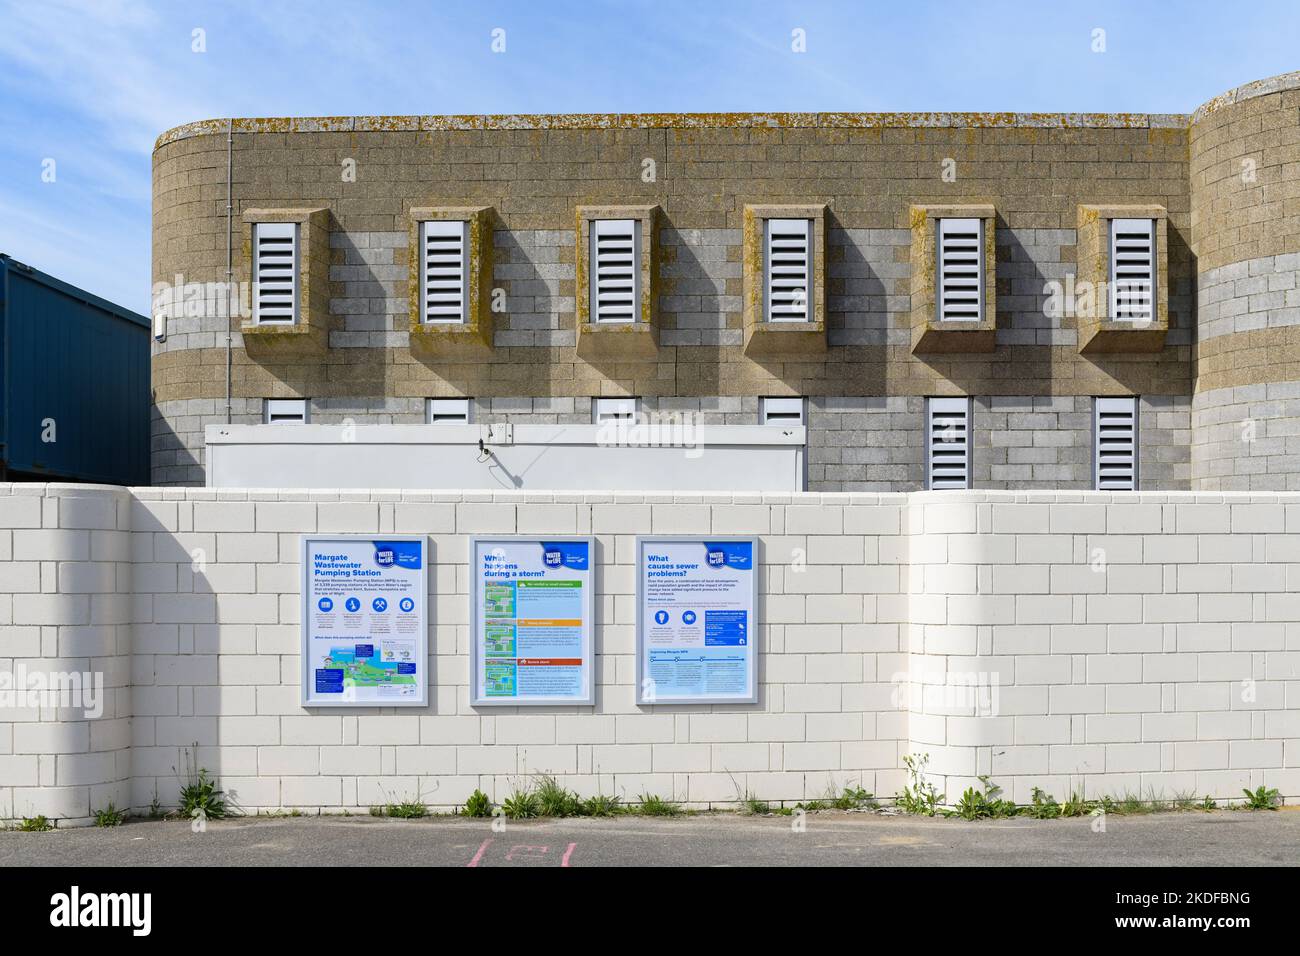 Margate Wastewater Pumping Station, Margate, Kent, England, UK Stock Photo